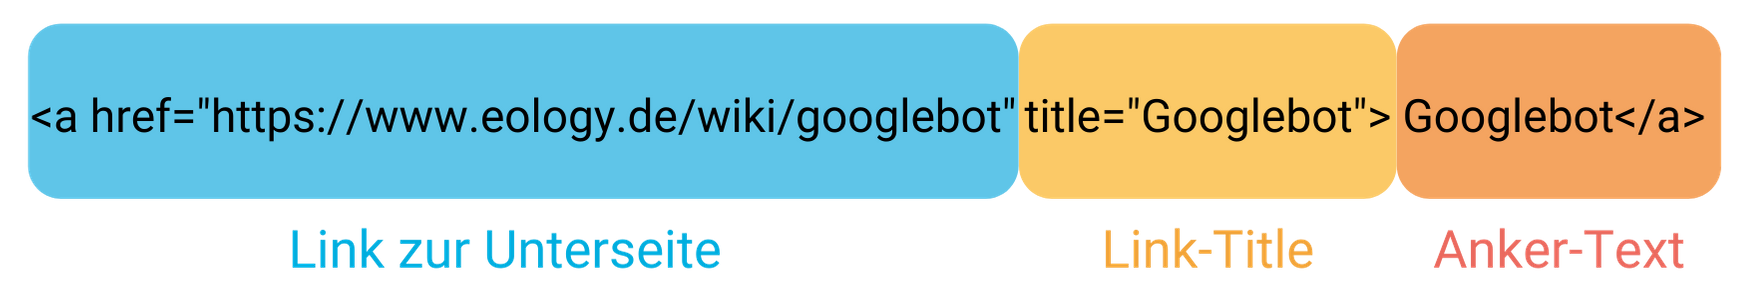 Darstellung der einzelnen Bestandteile einer internen Verlinkung mit Link zur Unterseite (blau markiert), Link-Title (gelb markiert( und Anker-Text (orange markiert).